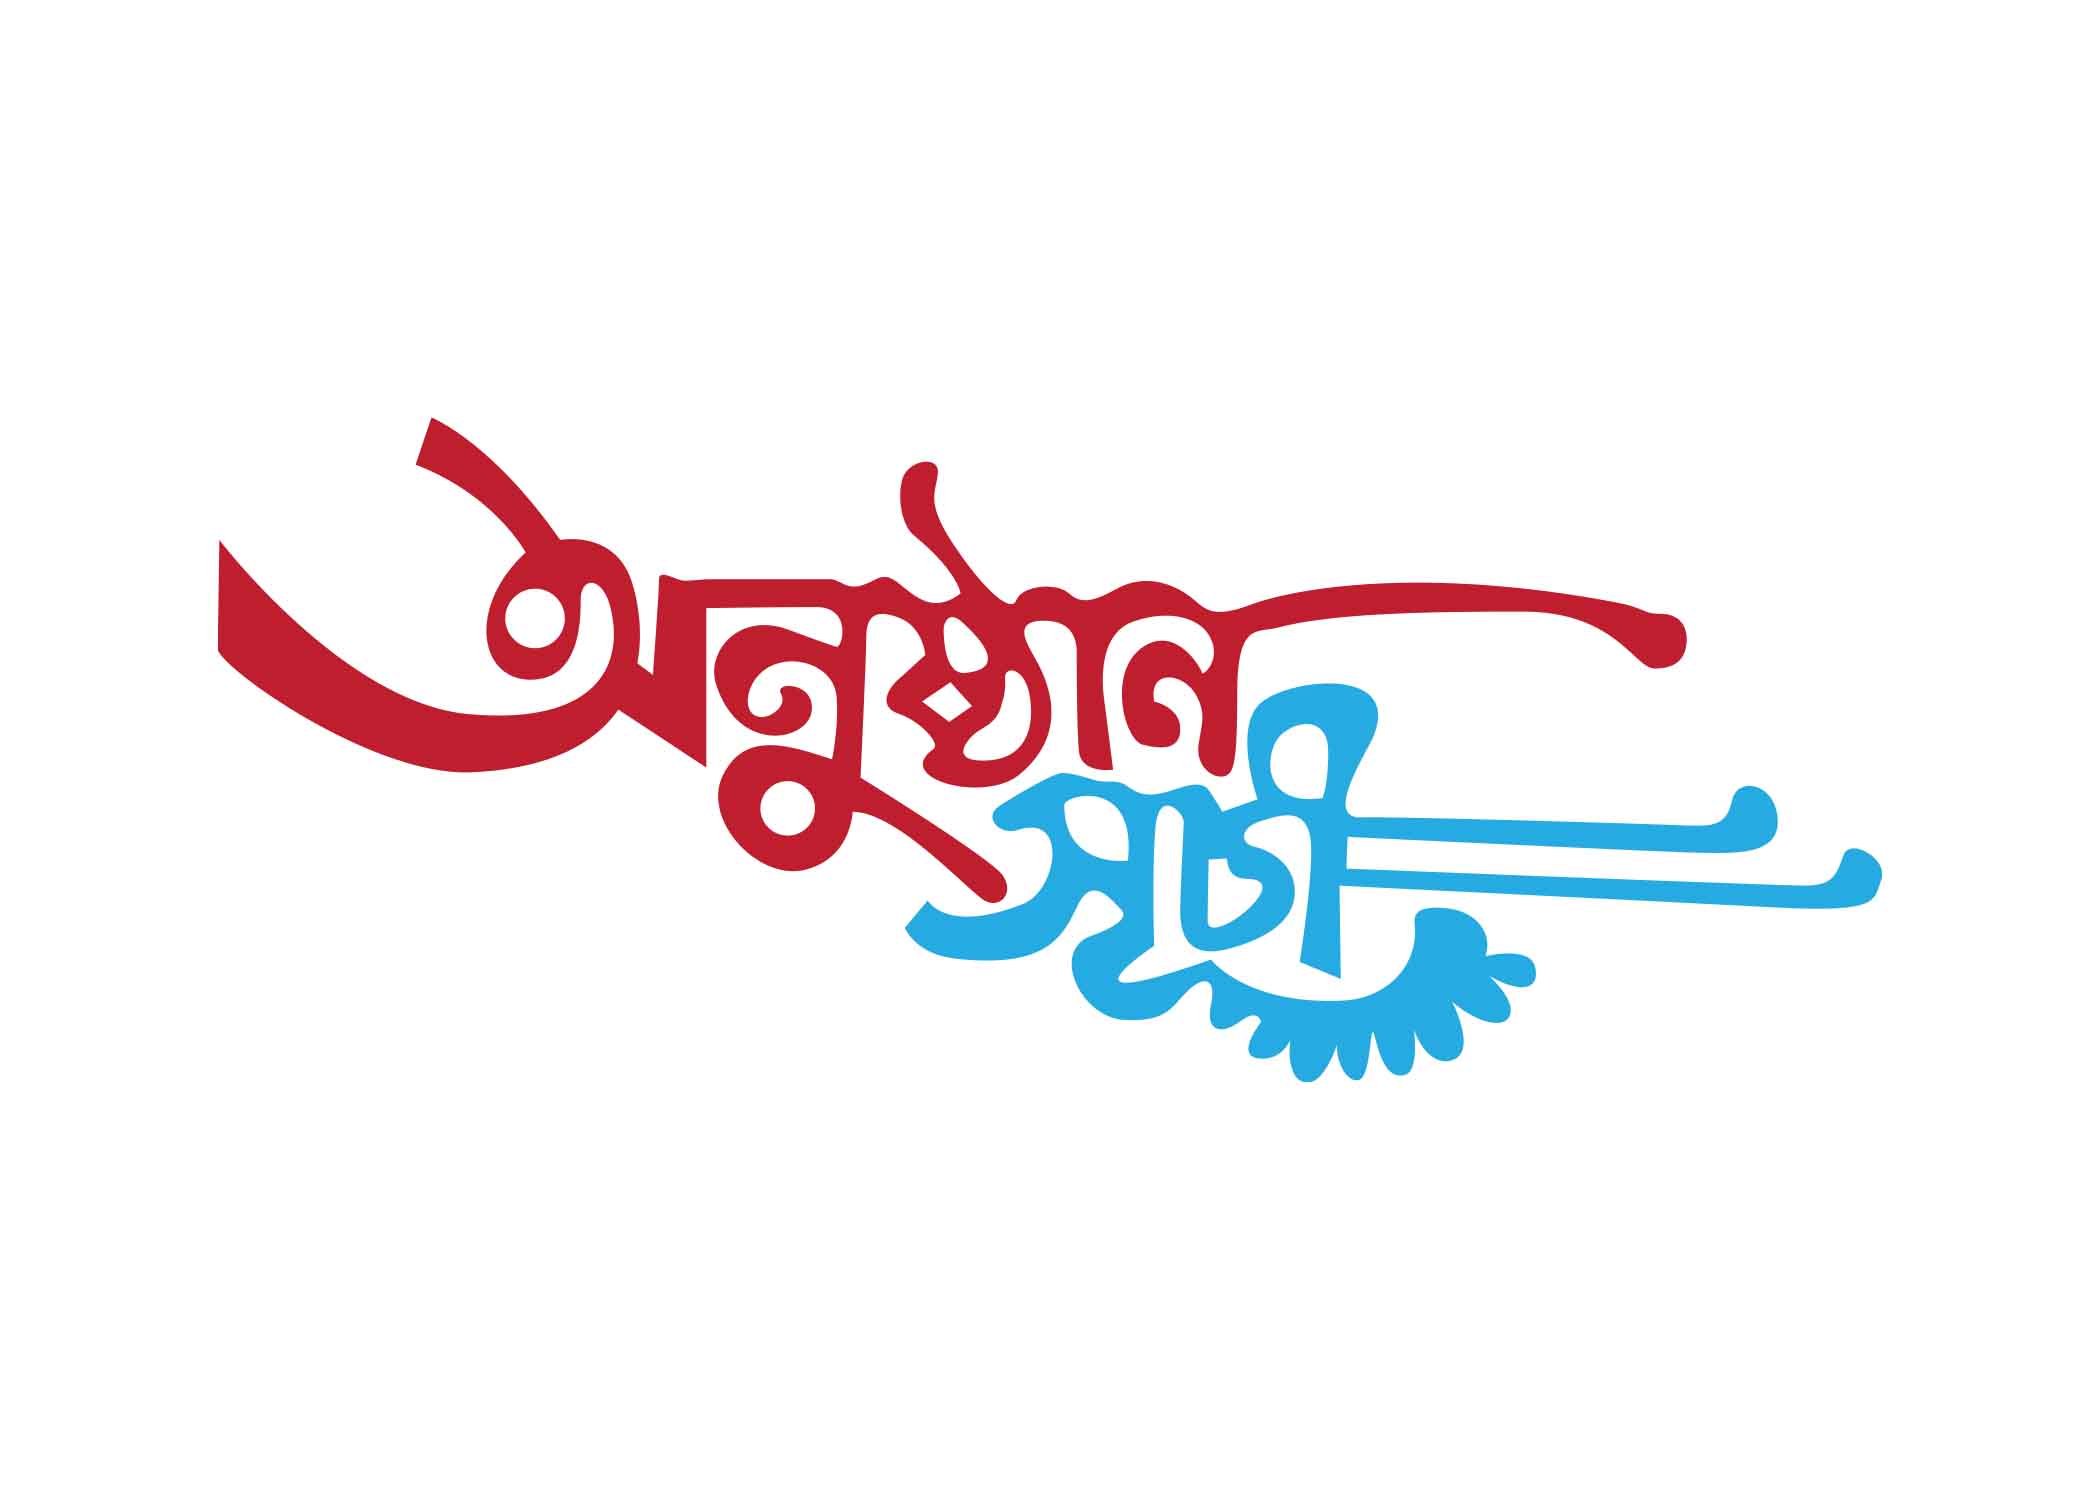 অনুষ্ঠান সূচী টাইপোগ্রাফি । Bangla Typography PNG